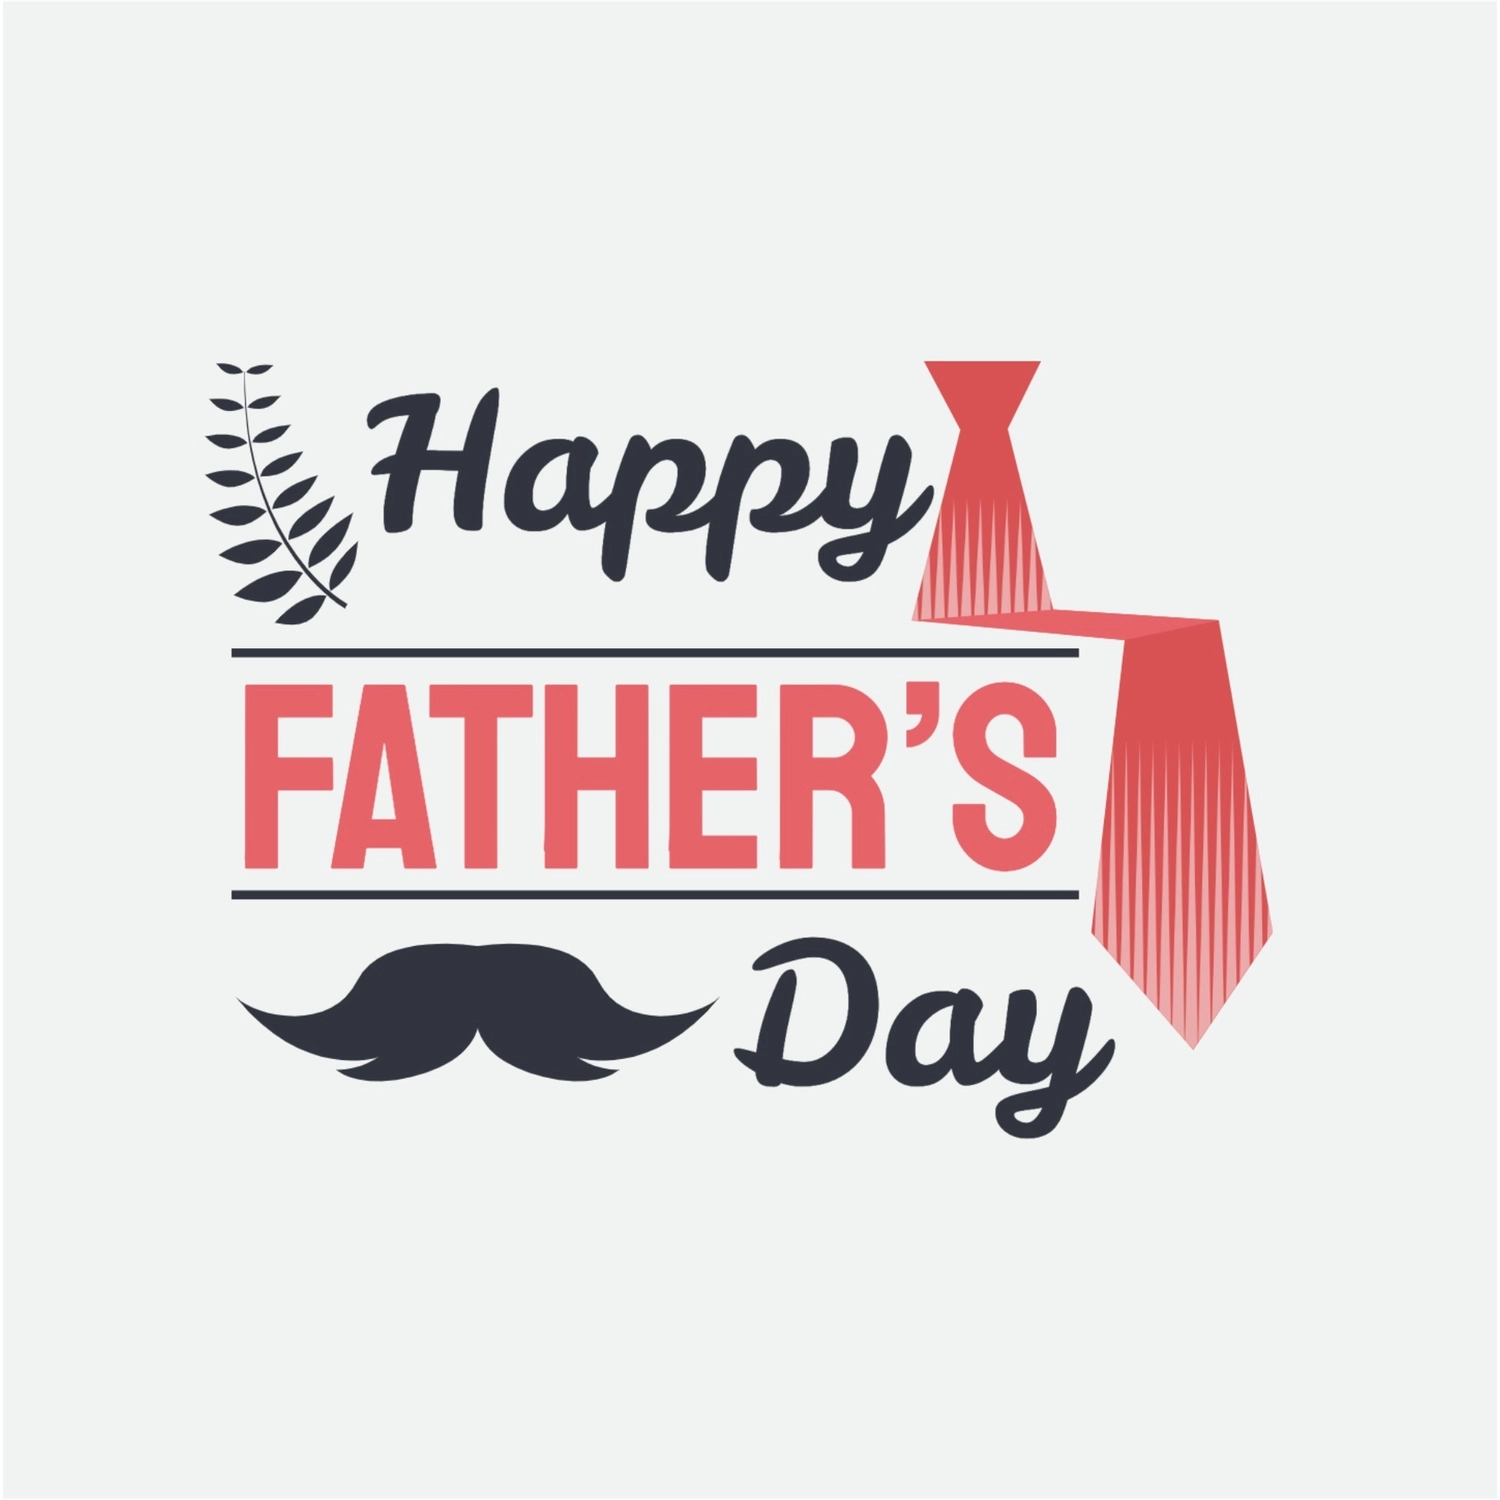 ネクタイと口髭の父の日ロゴ, ネクタイ, 父の日, 父の日, ロゴテンプレート